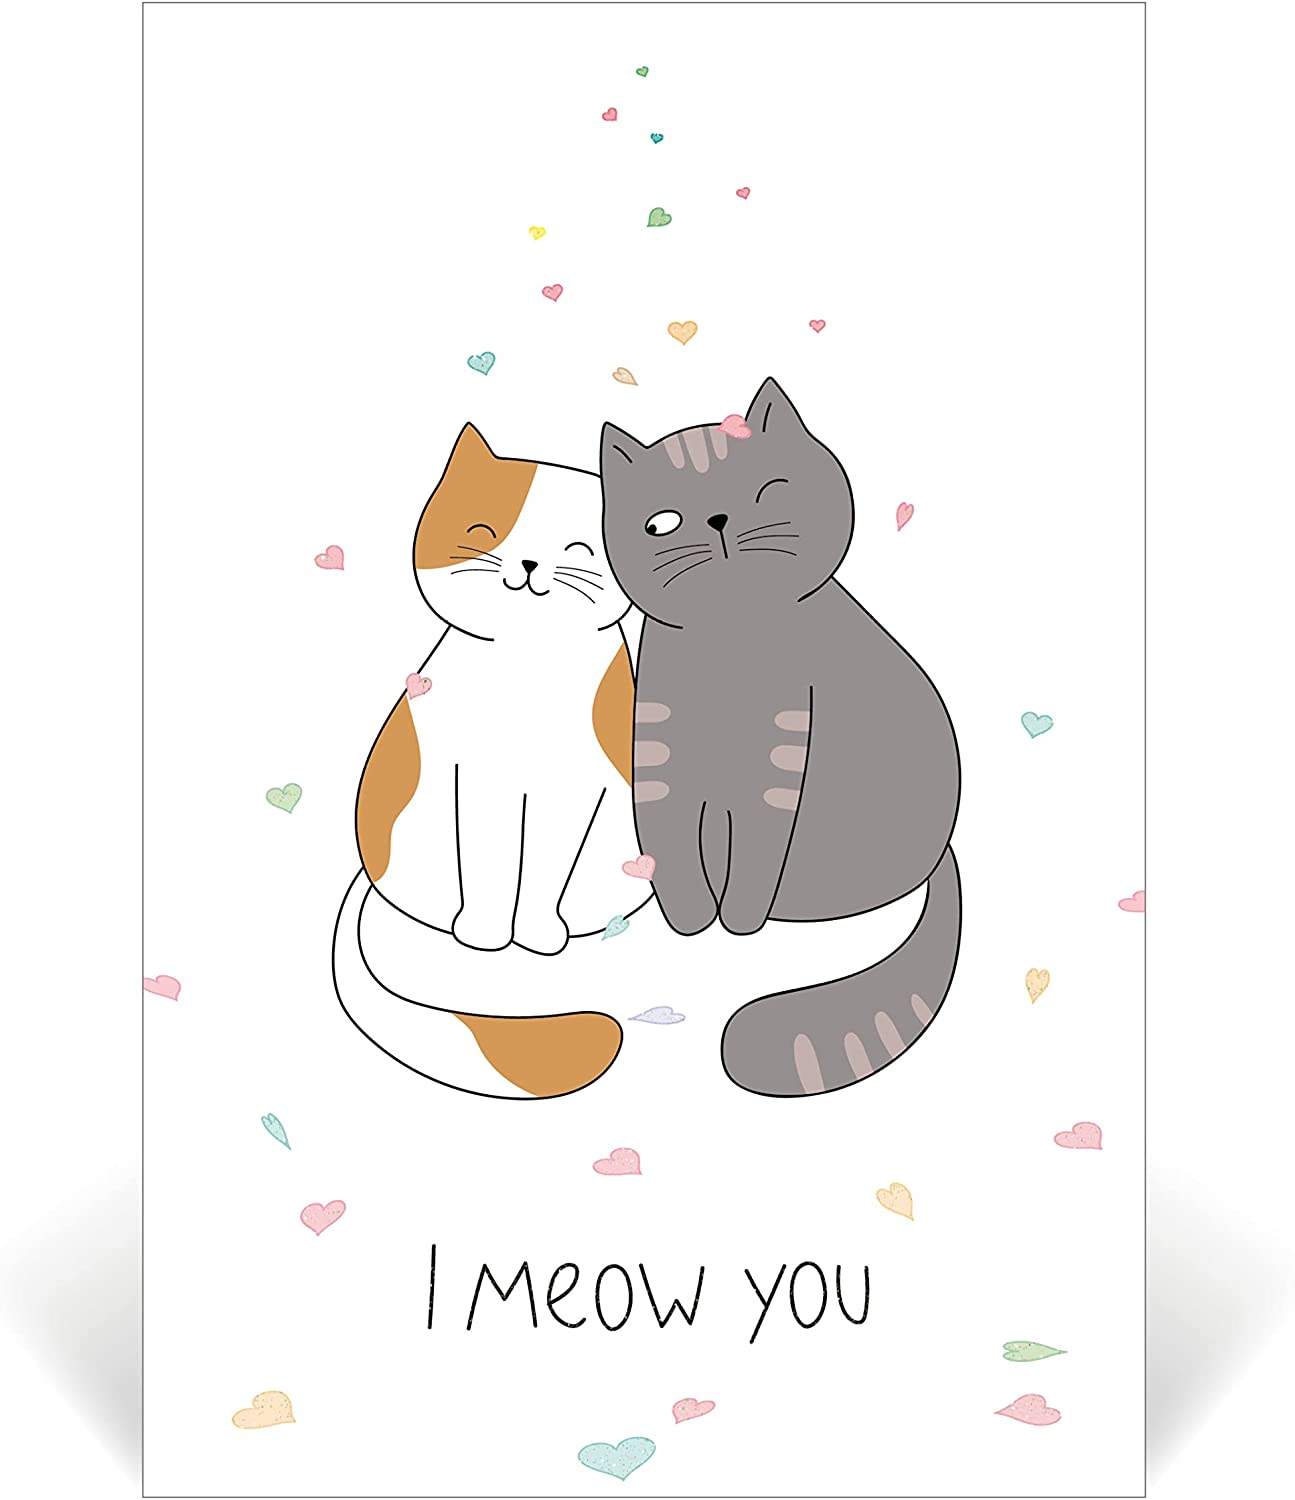 Biglietto di auguri classico con gatti e scritta "I meow you", ideale per San Valentino o per un anniversario, per amanti dei gatti